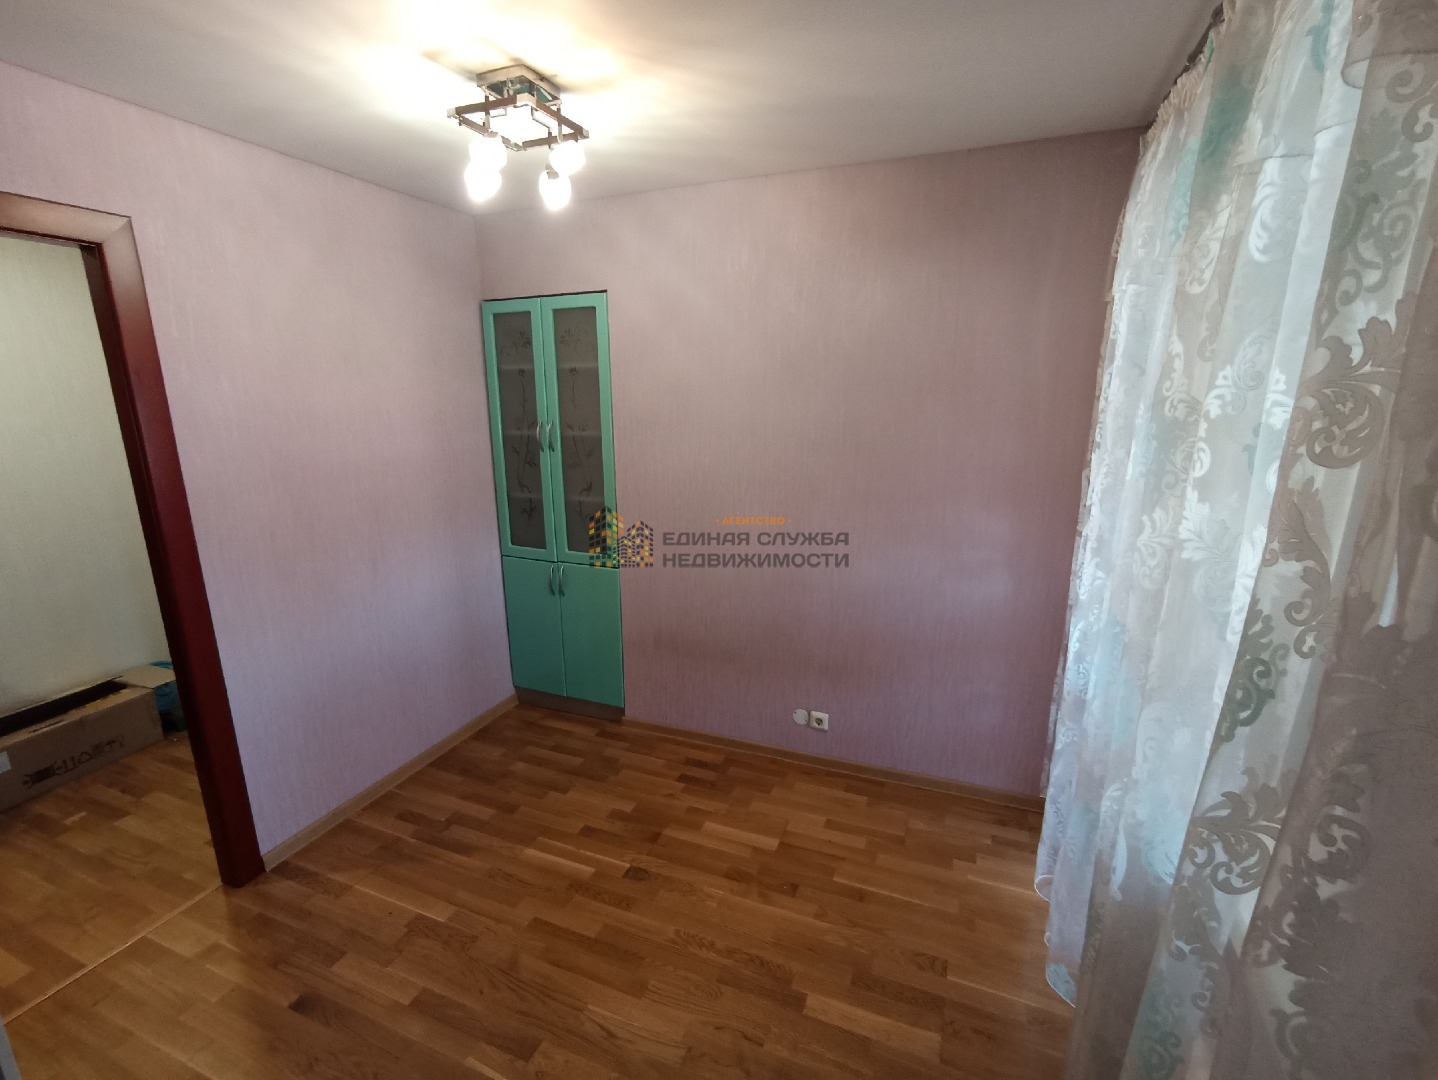 Сдается 2 х комнатная квартира в Октябрьском районе города Уфы в микрорайоне Сипайлово